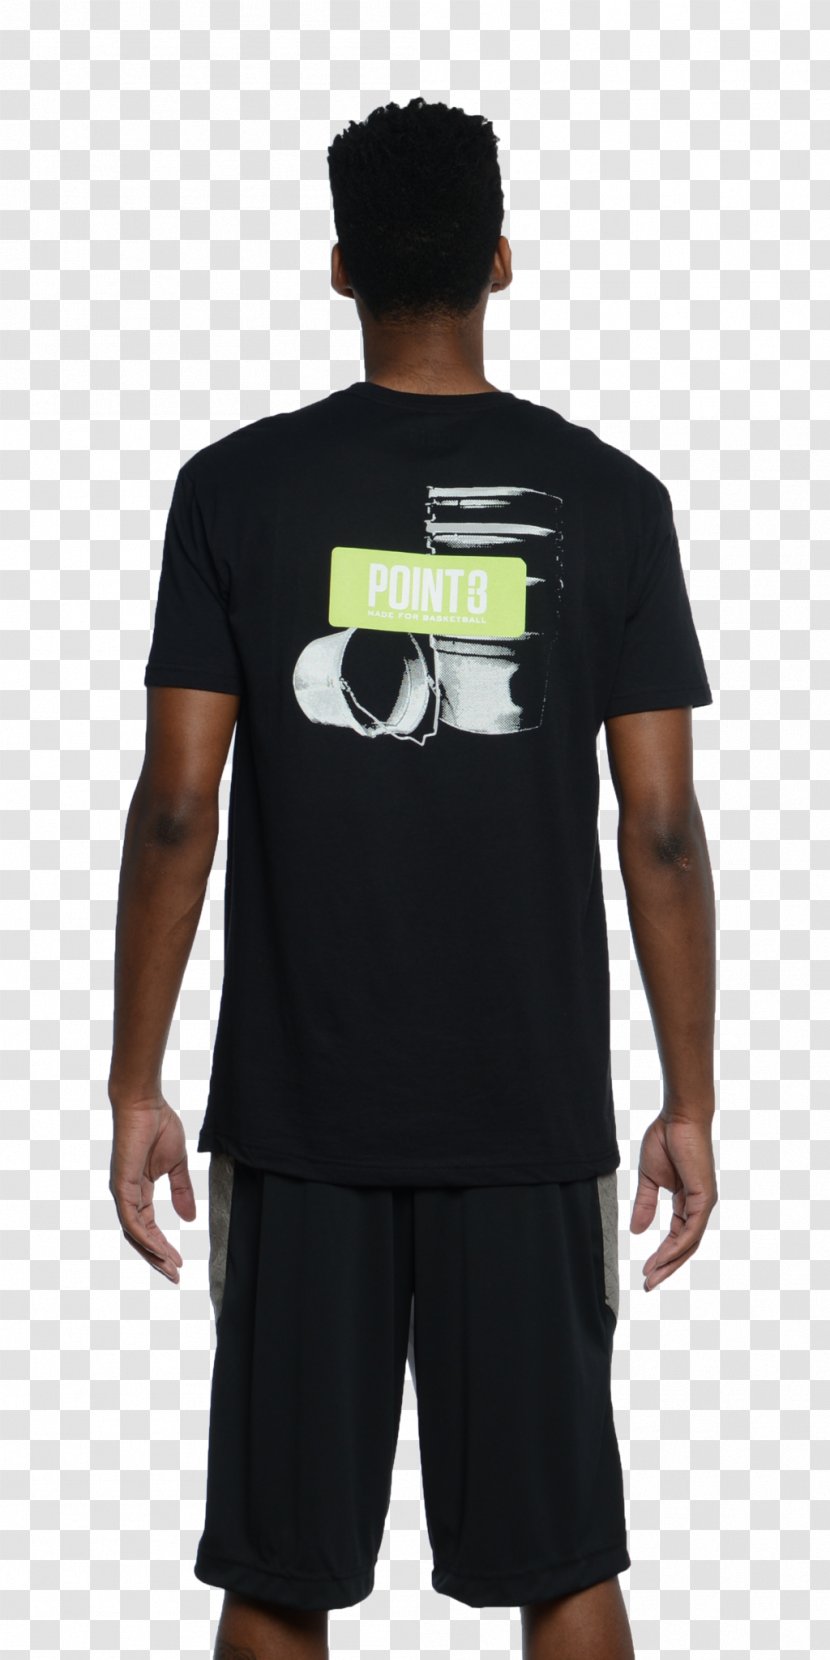 T-shirt Shoulder Sleeve Pocket Product Transparent PNG